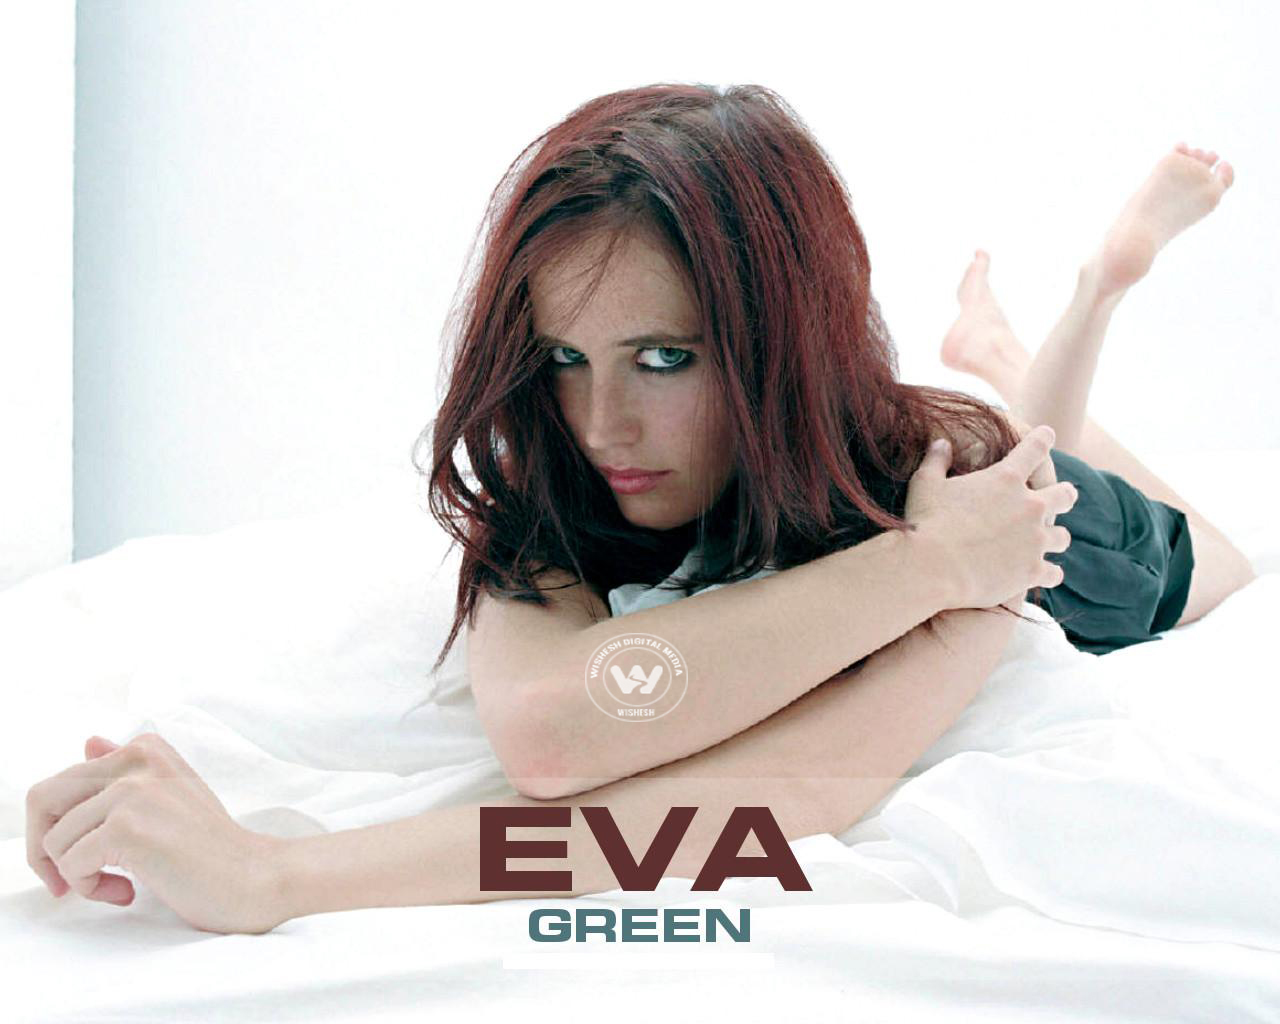 Hot Photos of Eva Green | Wallpaper 1of 10 | Eva Green | Hot Photos of Eva Green